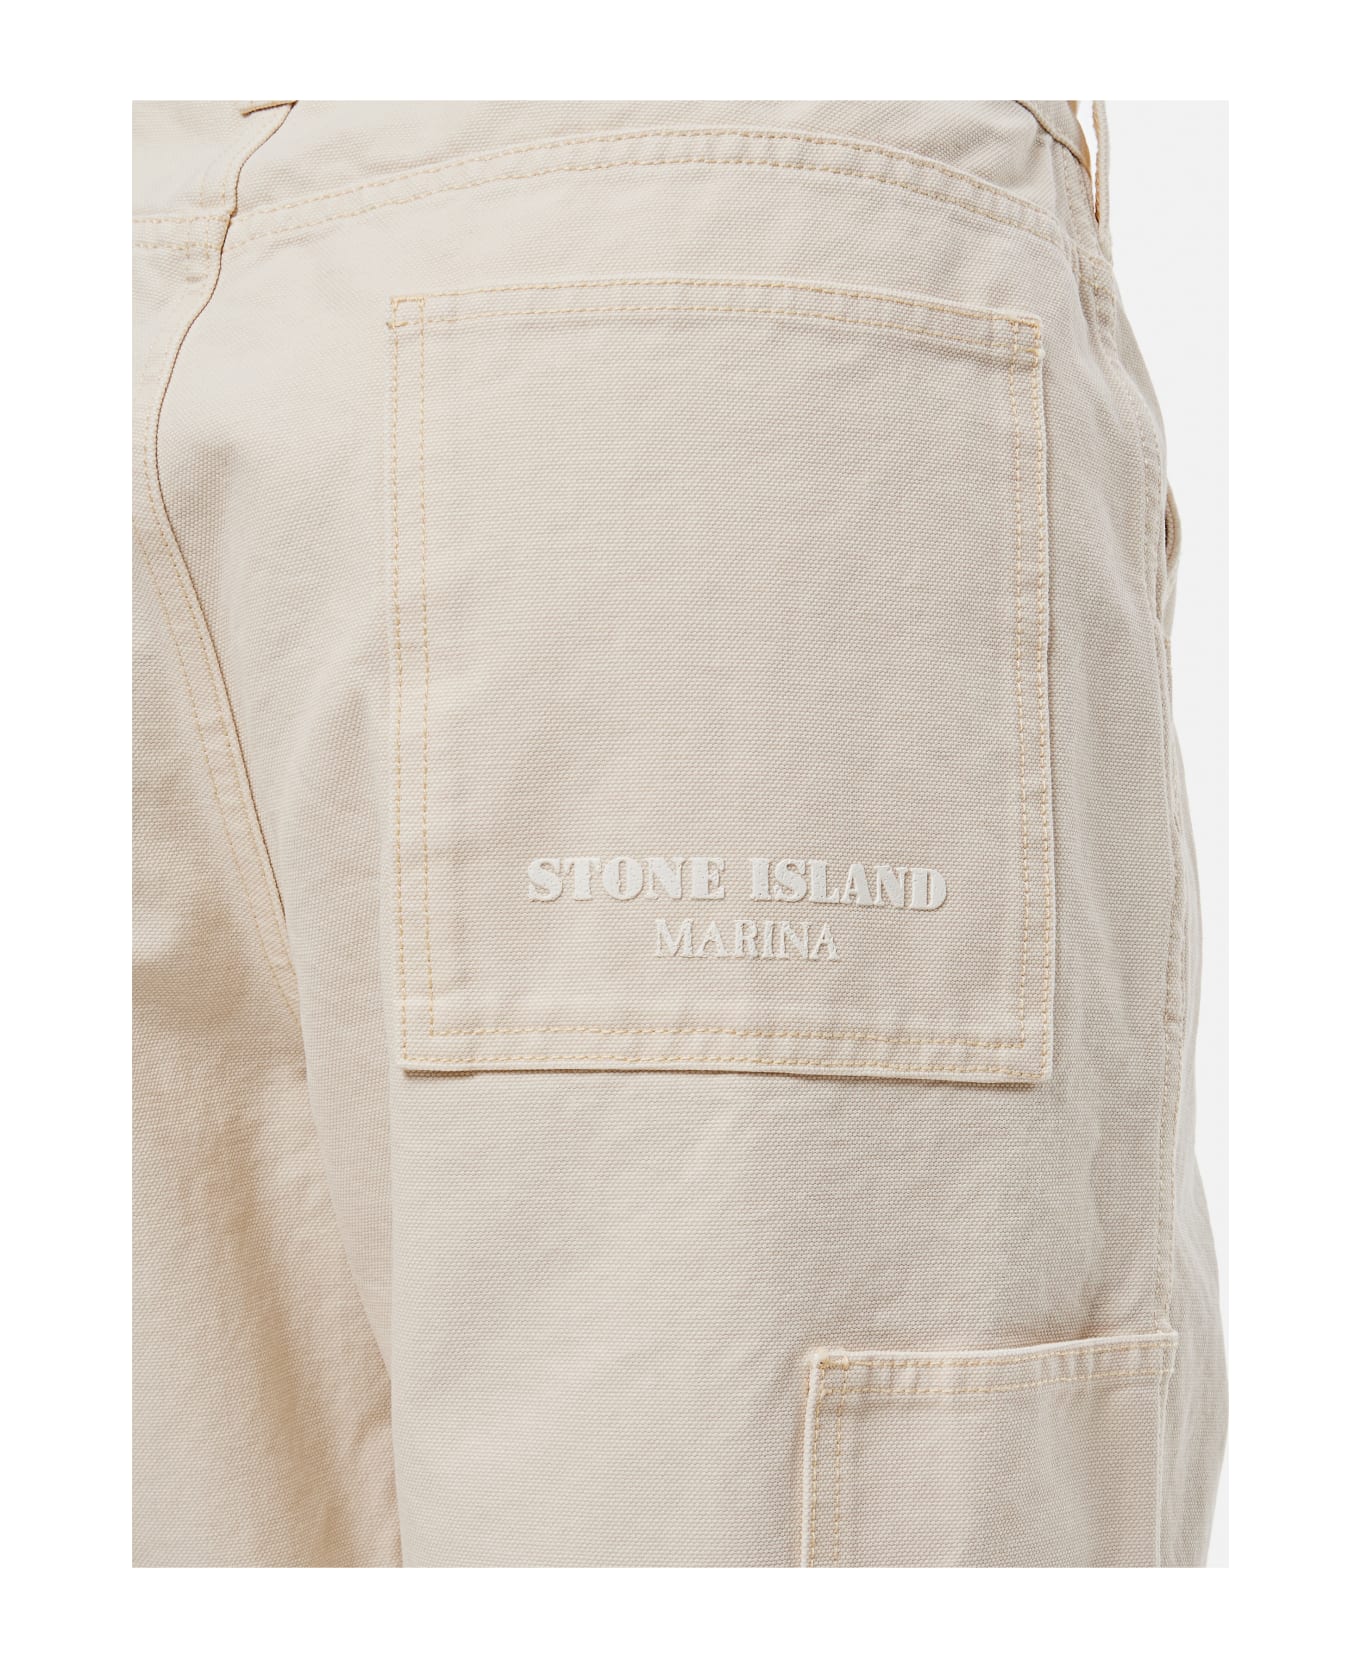 Stone Island Marina Trousers - beige ボトムス